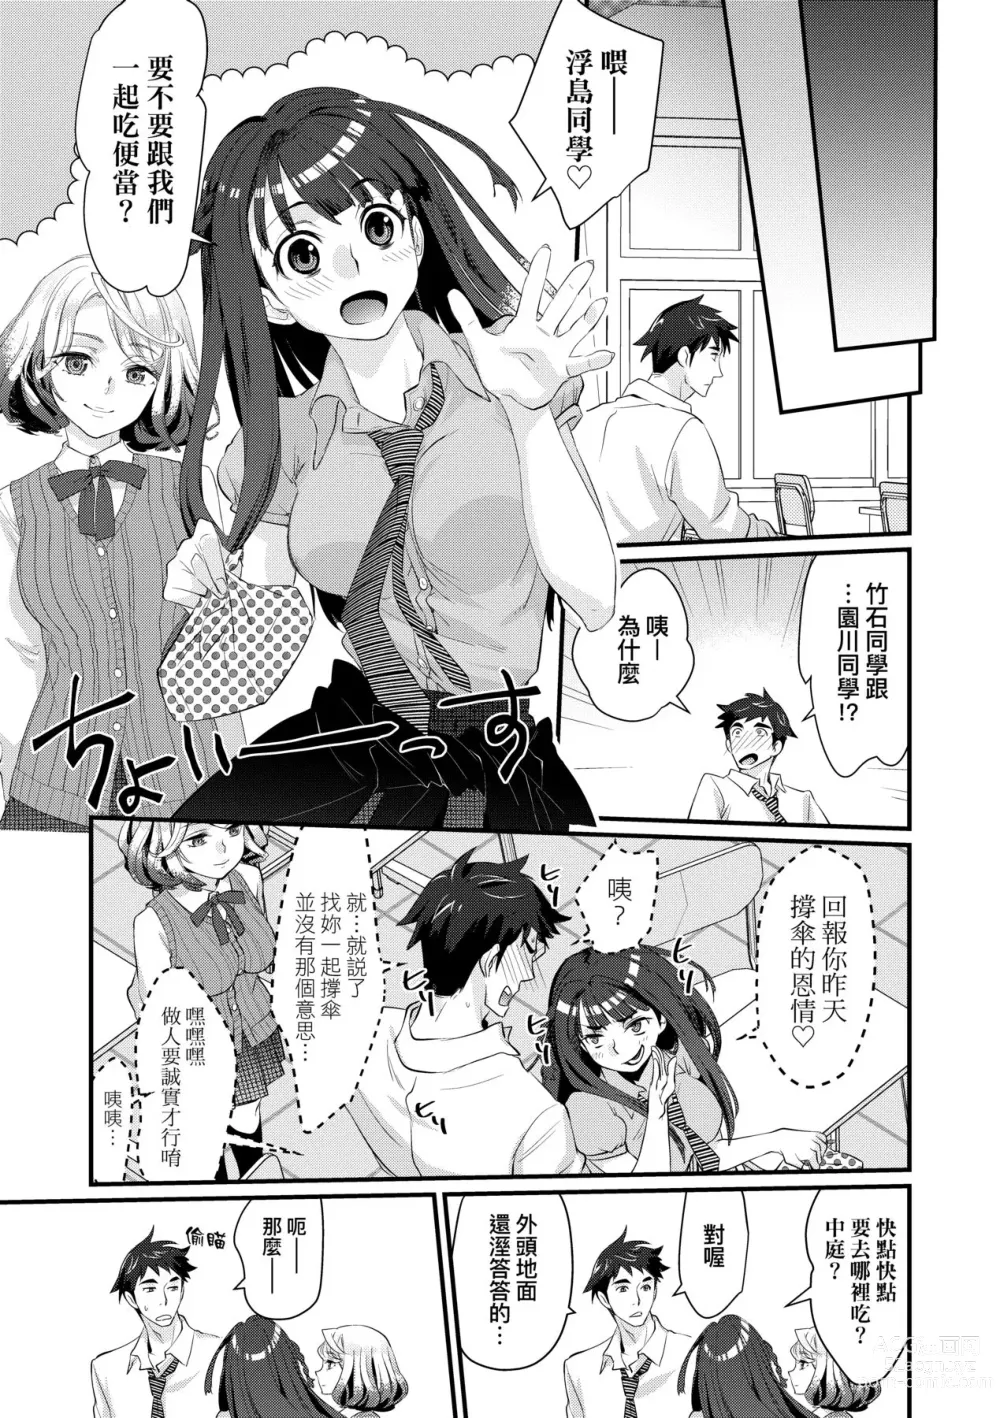 Page 12 of manga Echiechi JK Houimou (decensored)